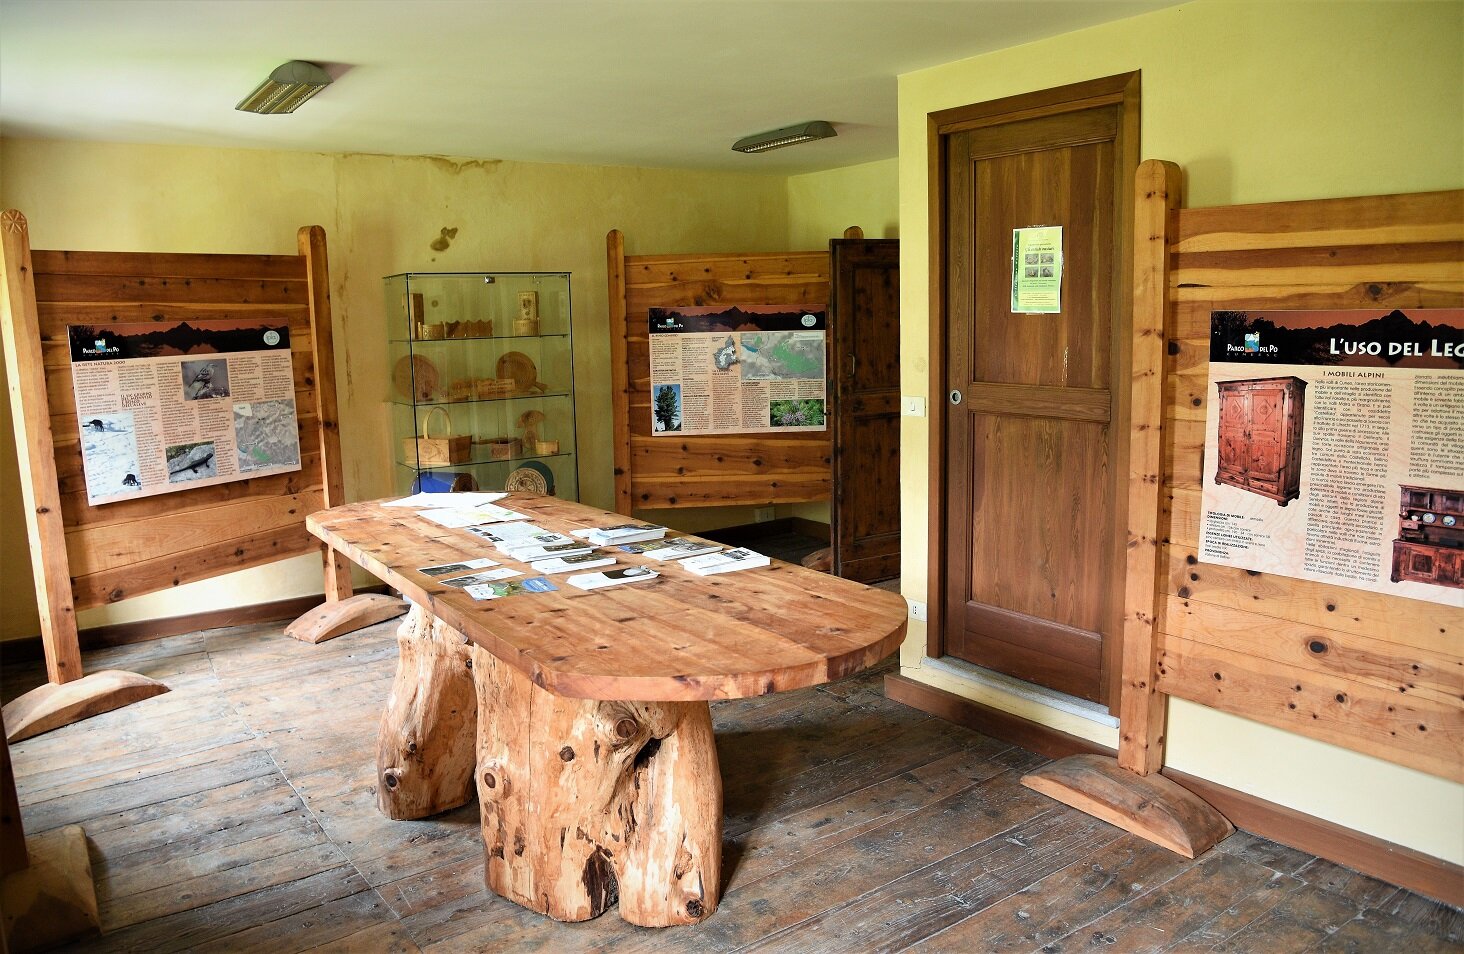 Nella foto la saletta al primo piano del Centro Visita Alevè che illustra l'utilizzo del legno di pino cembro e la storia del bosco. Sono esposti un tavolo, dei pannelli fotografici e esemplari di materiale ligneo lavorato